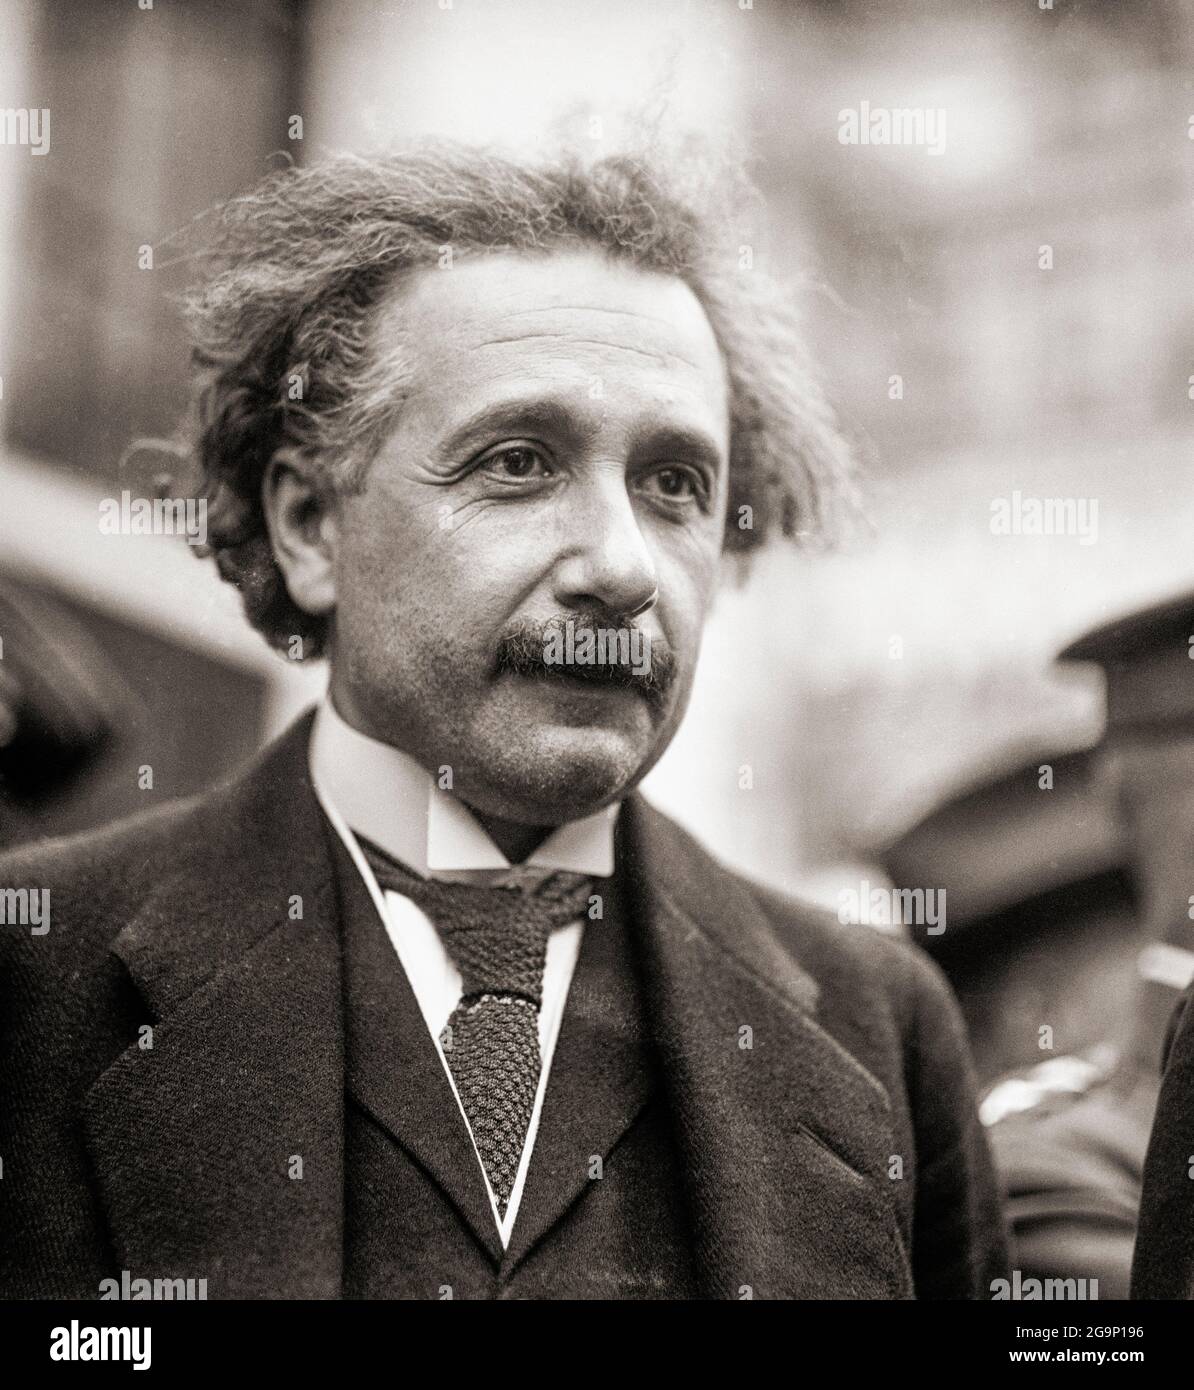 Albert Einstein, 1879 - 1955. Physicien théorique d'origine allemande. Parmi de nombreuses réalisations, il a présenté des théories de la relativité générale, de la relativité spéciale et de l'équivalence masse–énergie. Banque D'Images